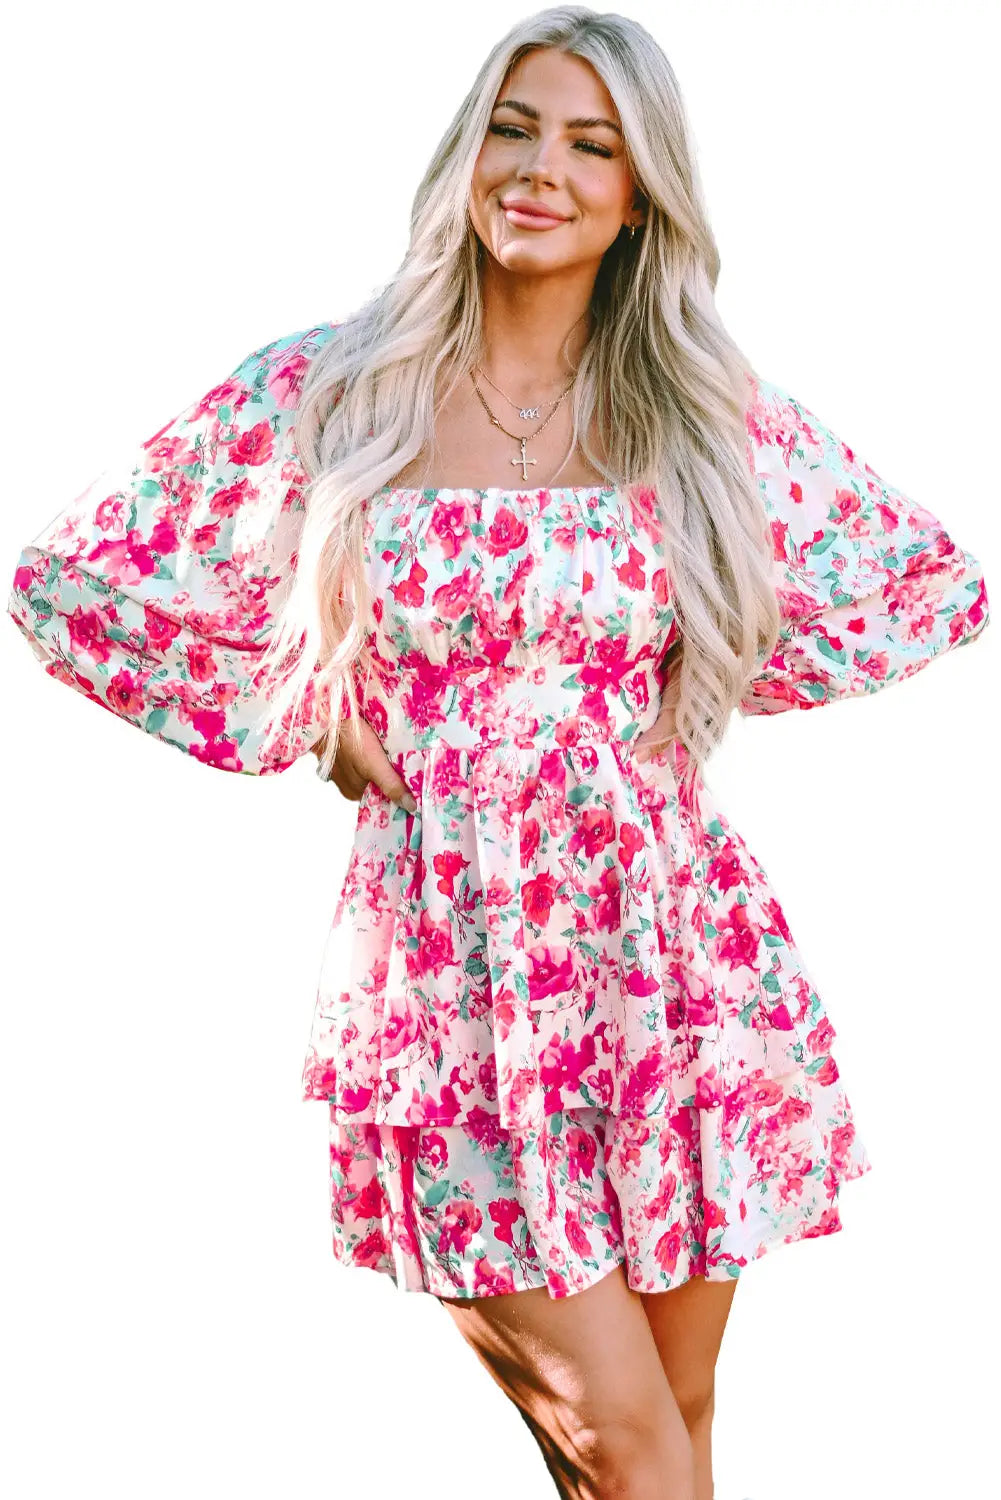 Pink ruffle tiered high waist puff sleeve floral dress - dresses